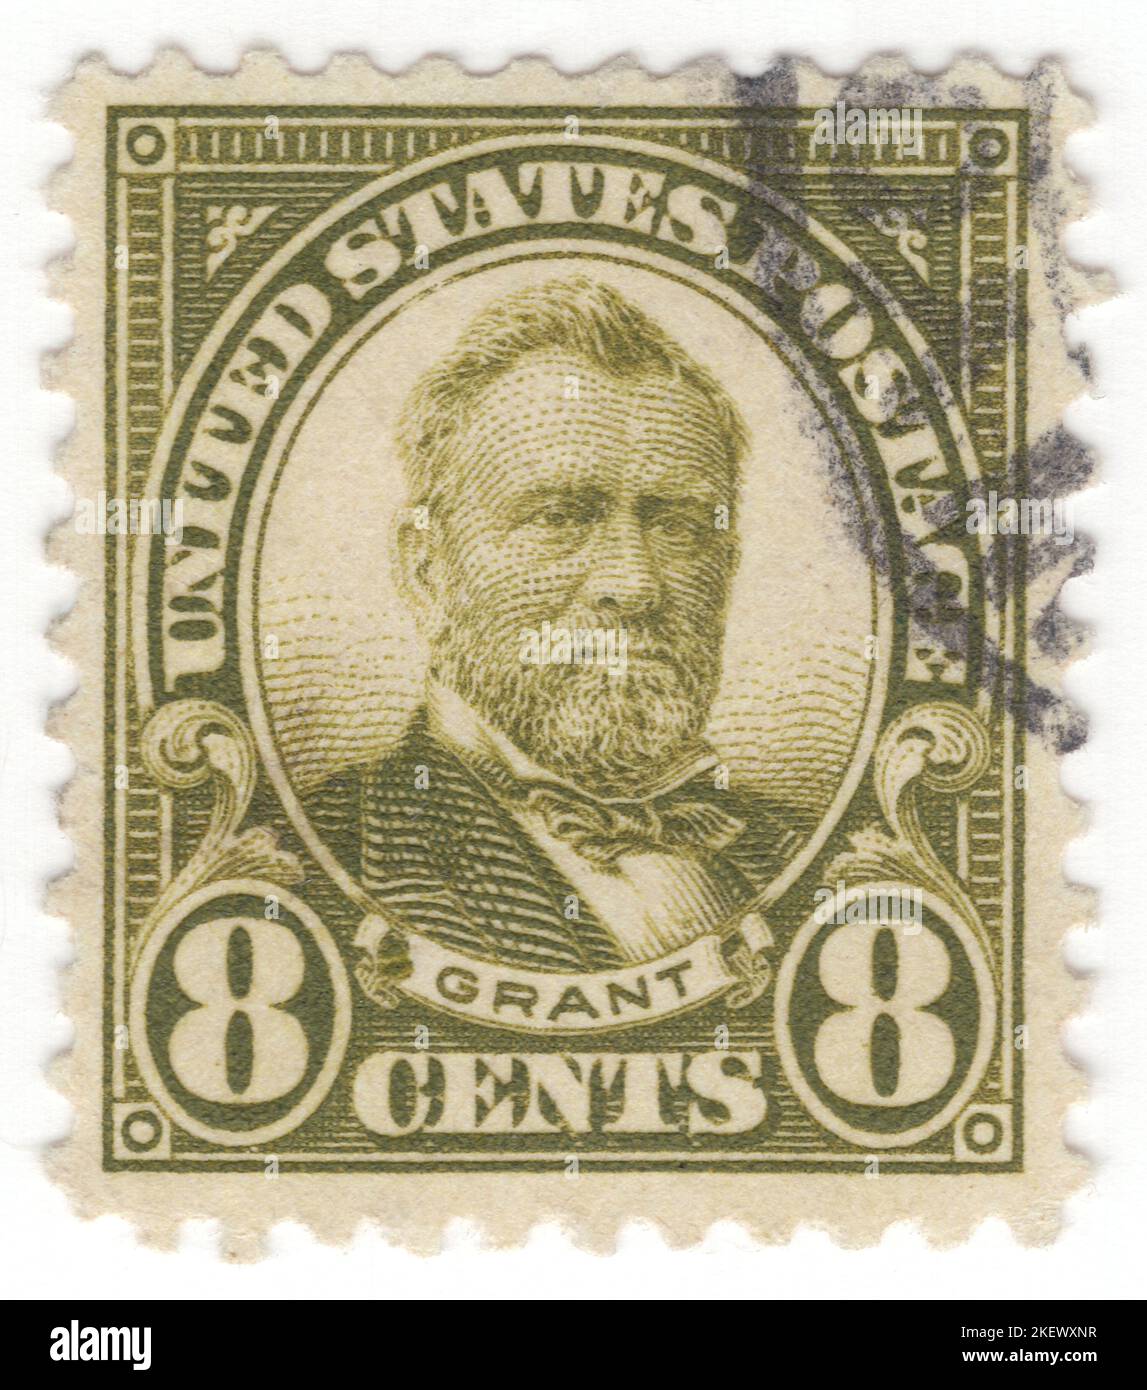 USA - 1923: Eine 8 Cent olivgrüne Briefmarke, die das Porträt von Ulysses S. Grant (geb. Hiram Ulysses Grant) zeigt, einem amerikanischen Militäroffizier und Politiker, der von 1869 bis 1877 als Präsident der Vereinigten Staaten von 18. diente. Als kommandierender General führte er 1865 die Union Army zum Sieg im amerikanischen Bürgerkrieg und diente danach kurz als Kriegsminister. Später, als Präsident, war Grant ein effektiver Bürgerrechtler, der den Gesetzentwurf unterzeichnete, der das Justizministerium gründete und mit radikalen Republikanern zusammenarbeitete, um Afroamerikaner während des Wiederaufbaus zu schützen Stockfoto